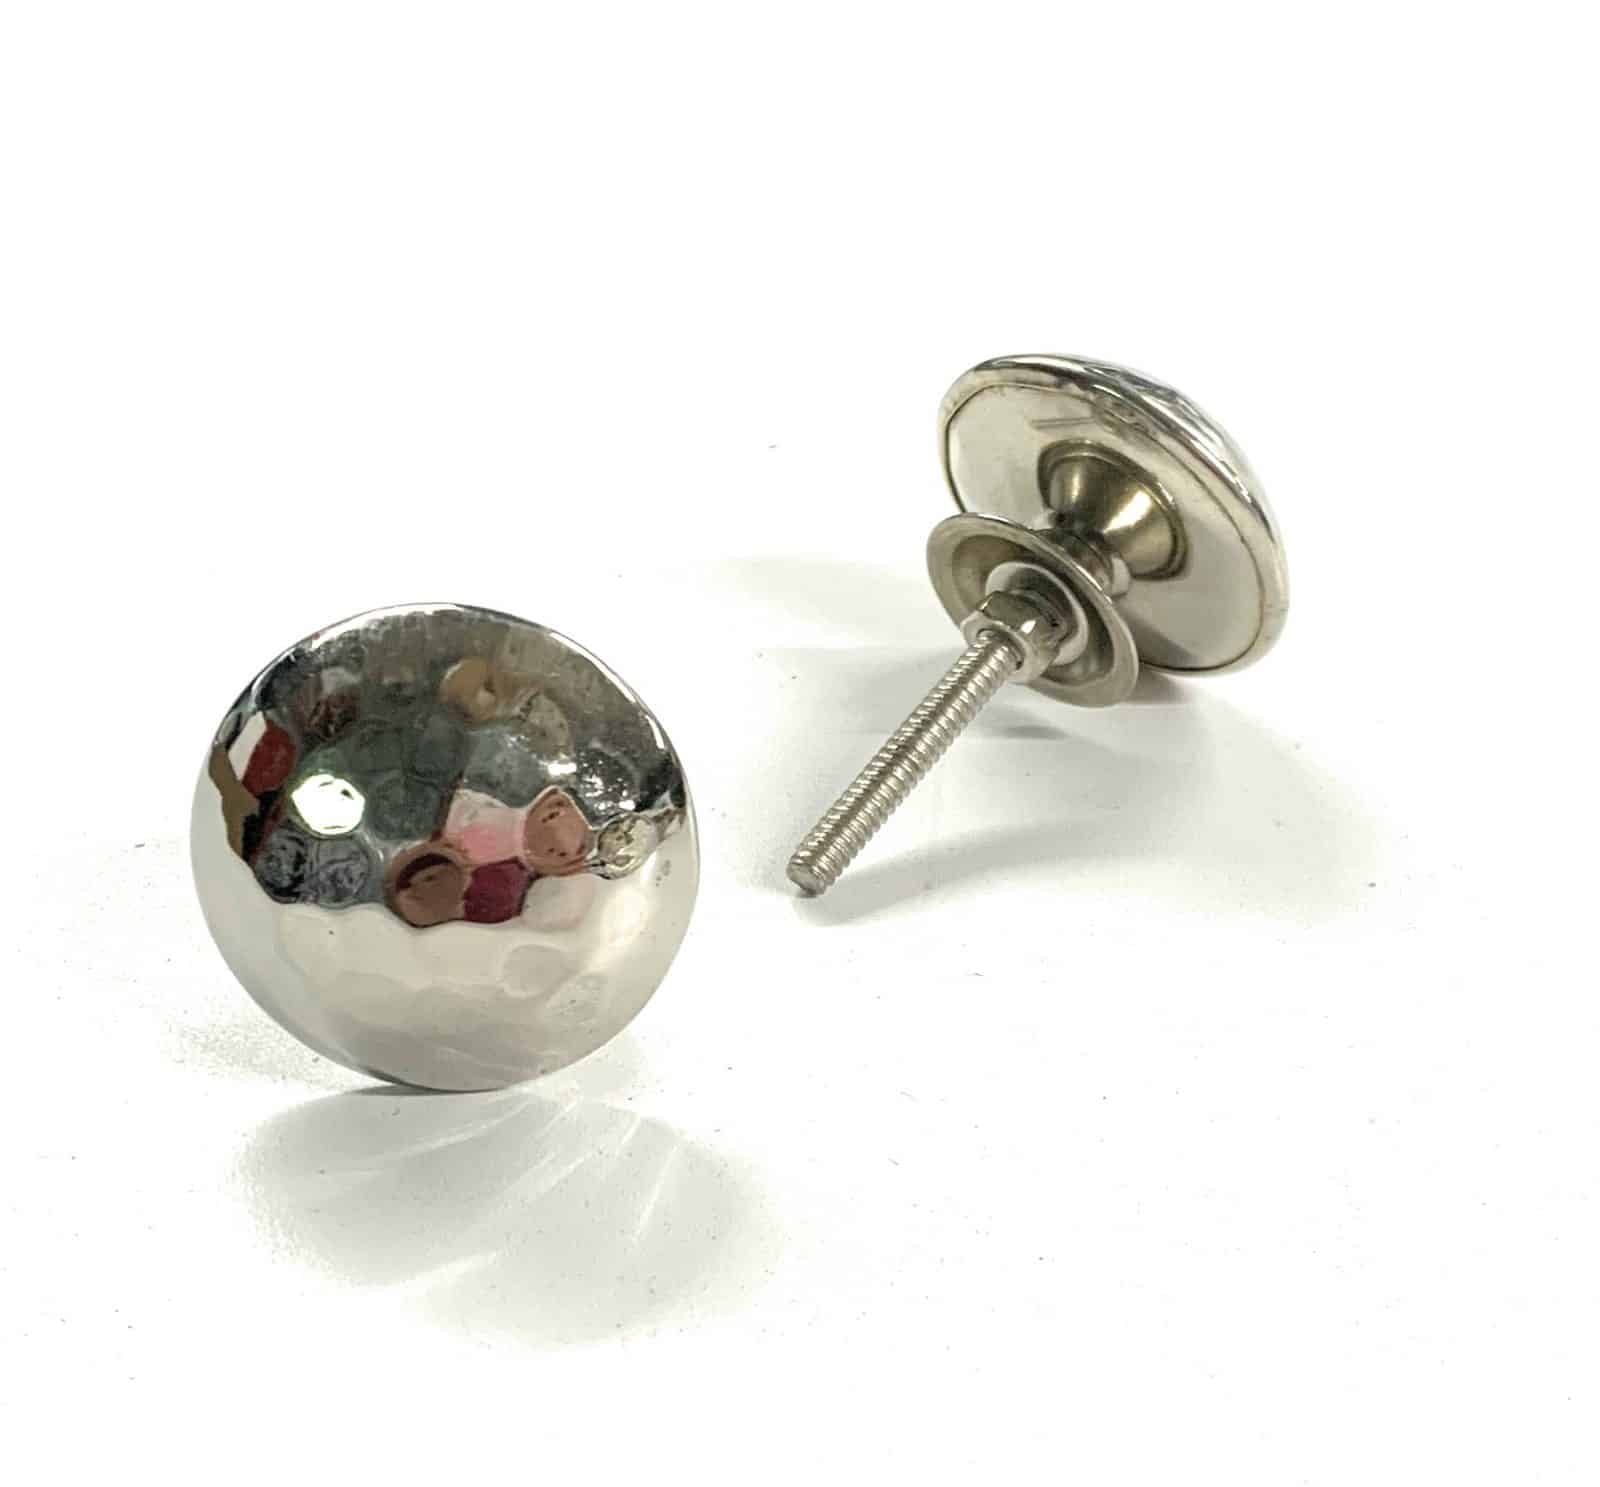 Silver ball Metal Knob - knob033 (Pack of 2) | Poignée boule en métal argent knob033 (Paquet de 2)